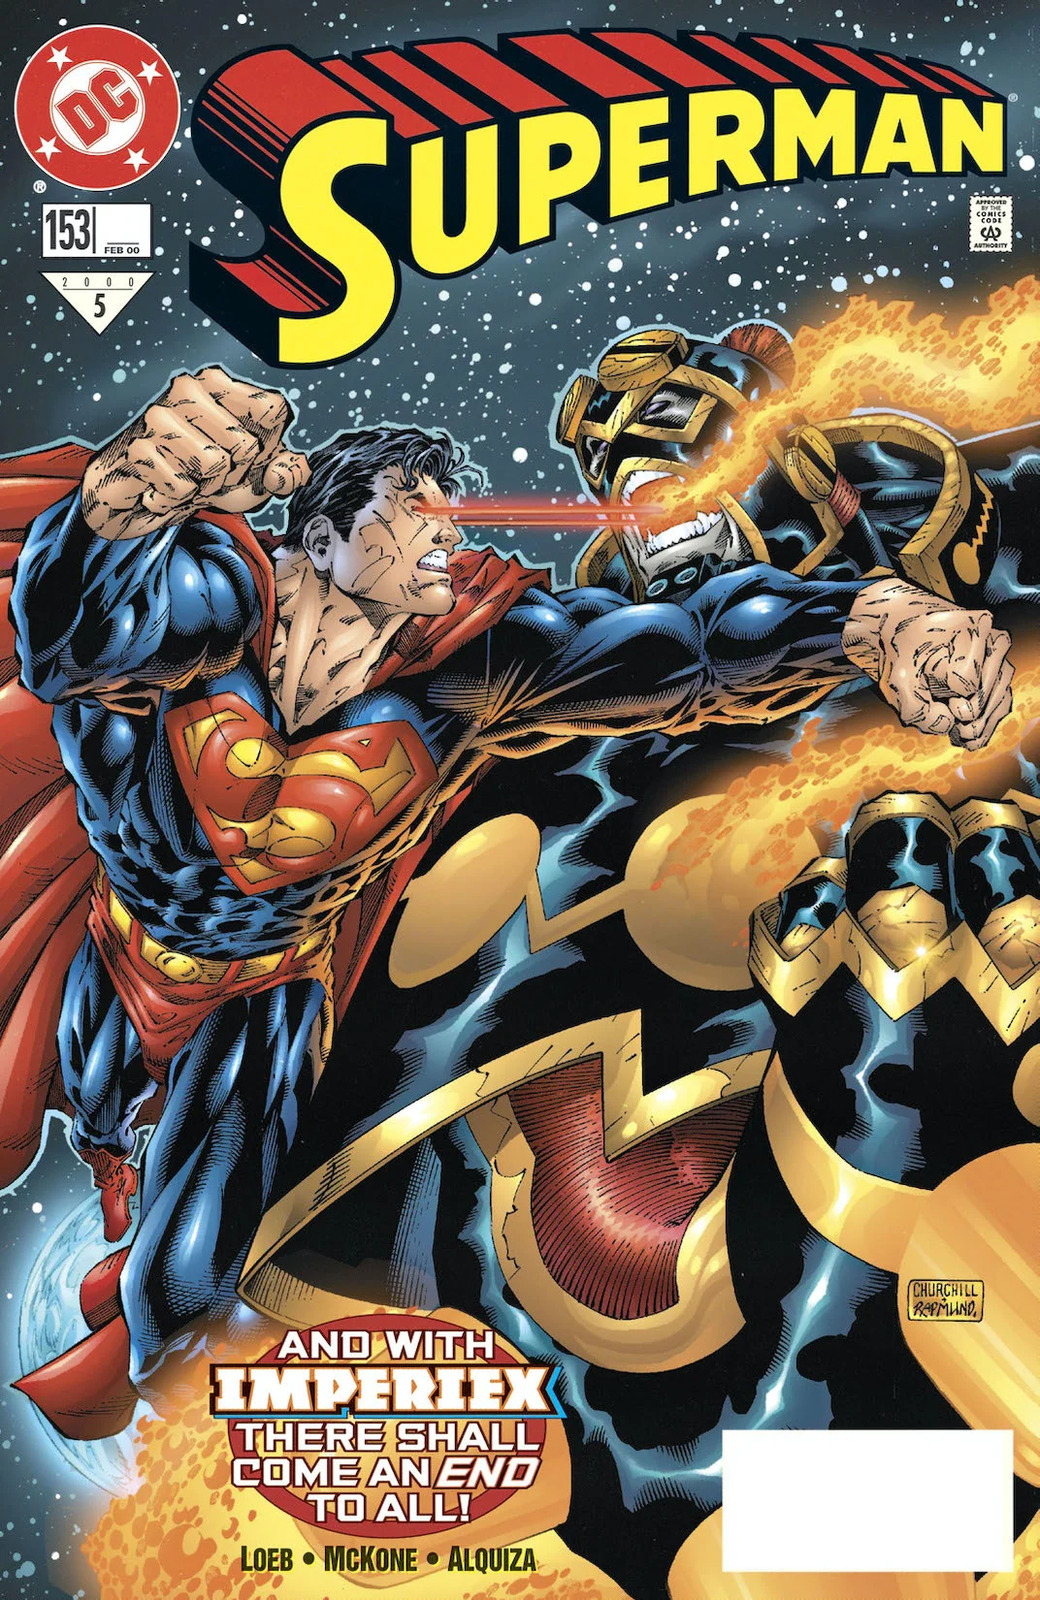 Superman #153 Vol 2